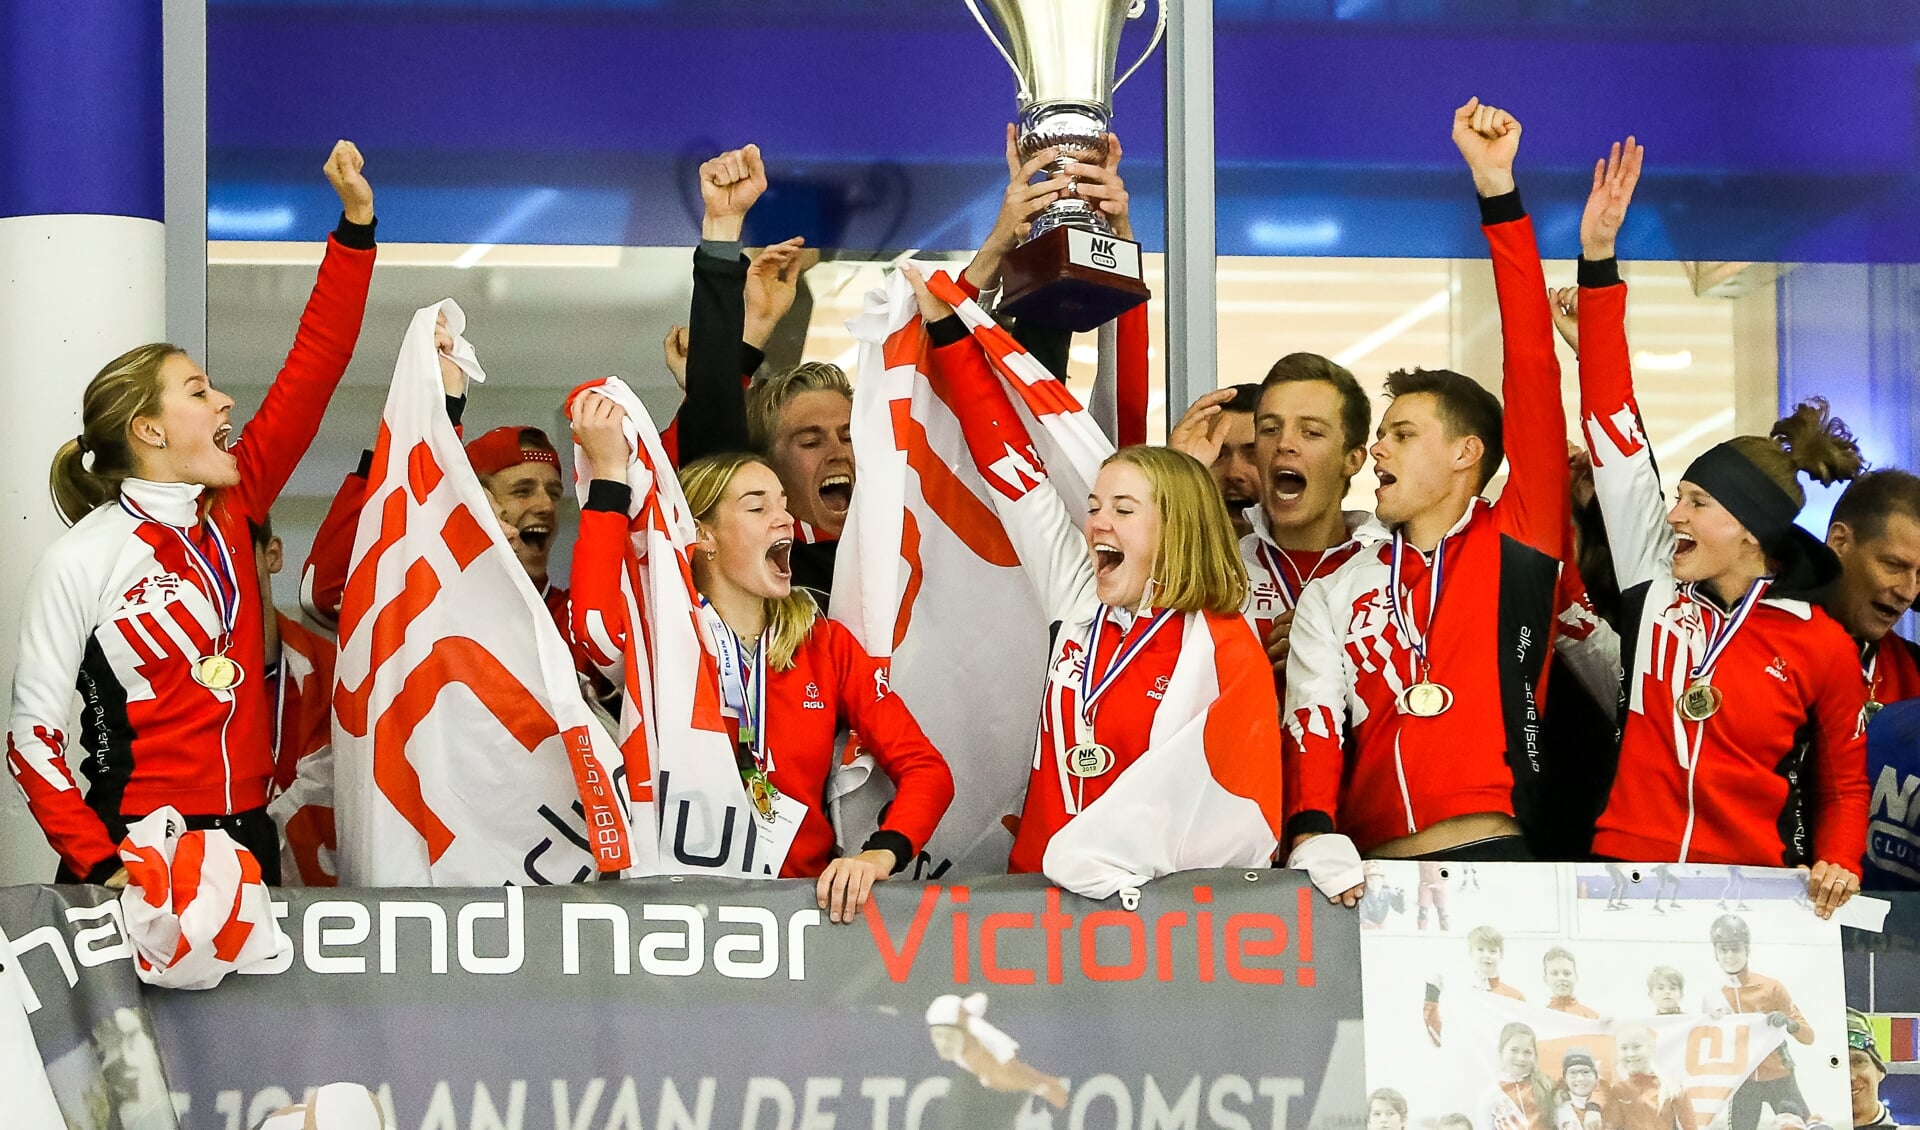 De Alkmaarsche IJsclub won het NK Clubs in 2019